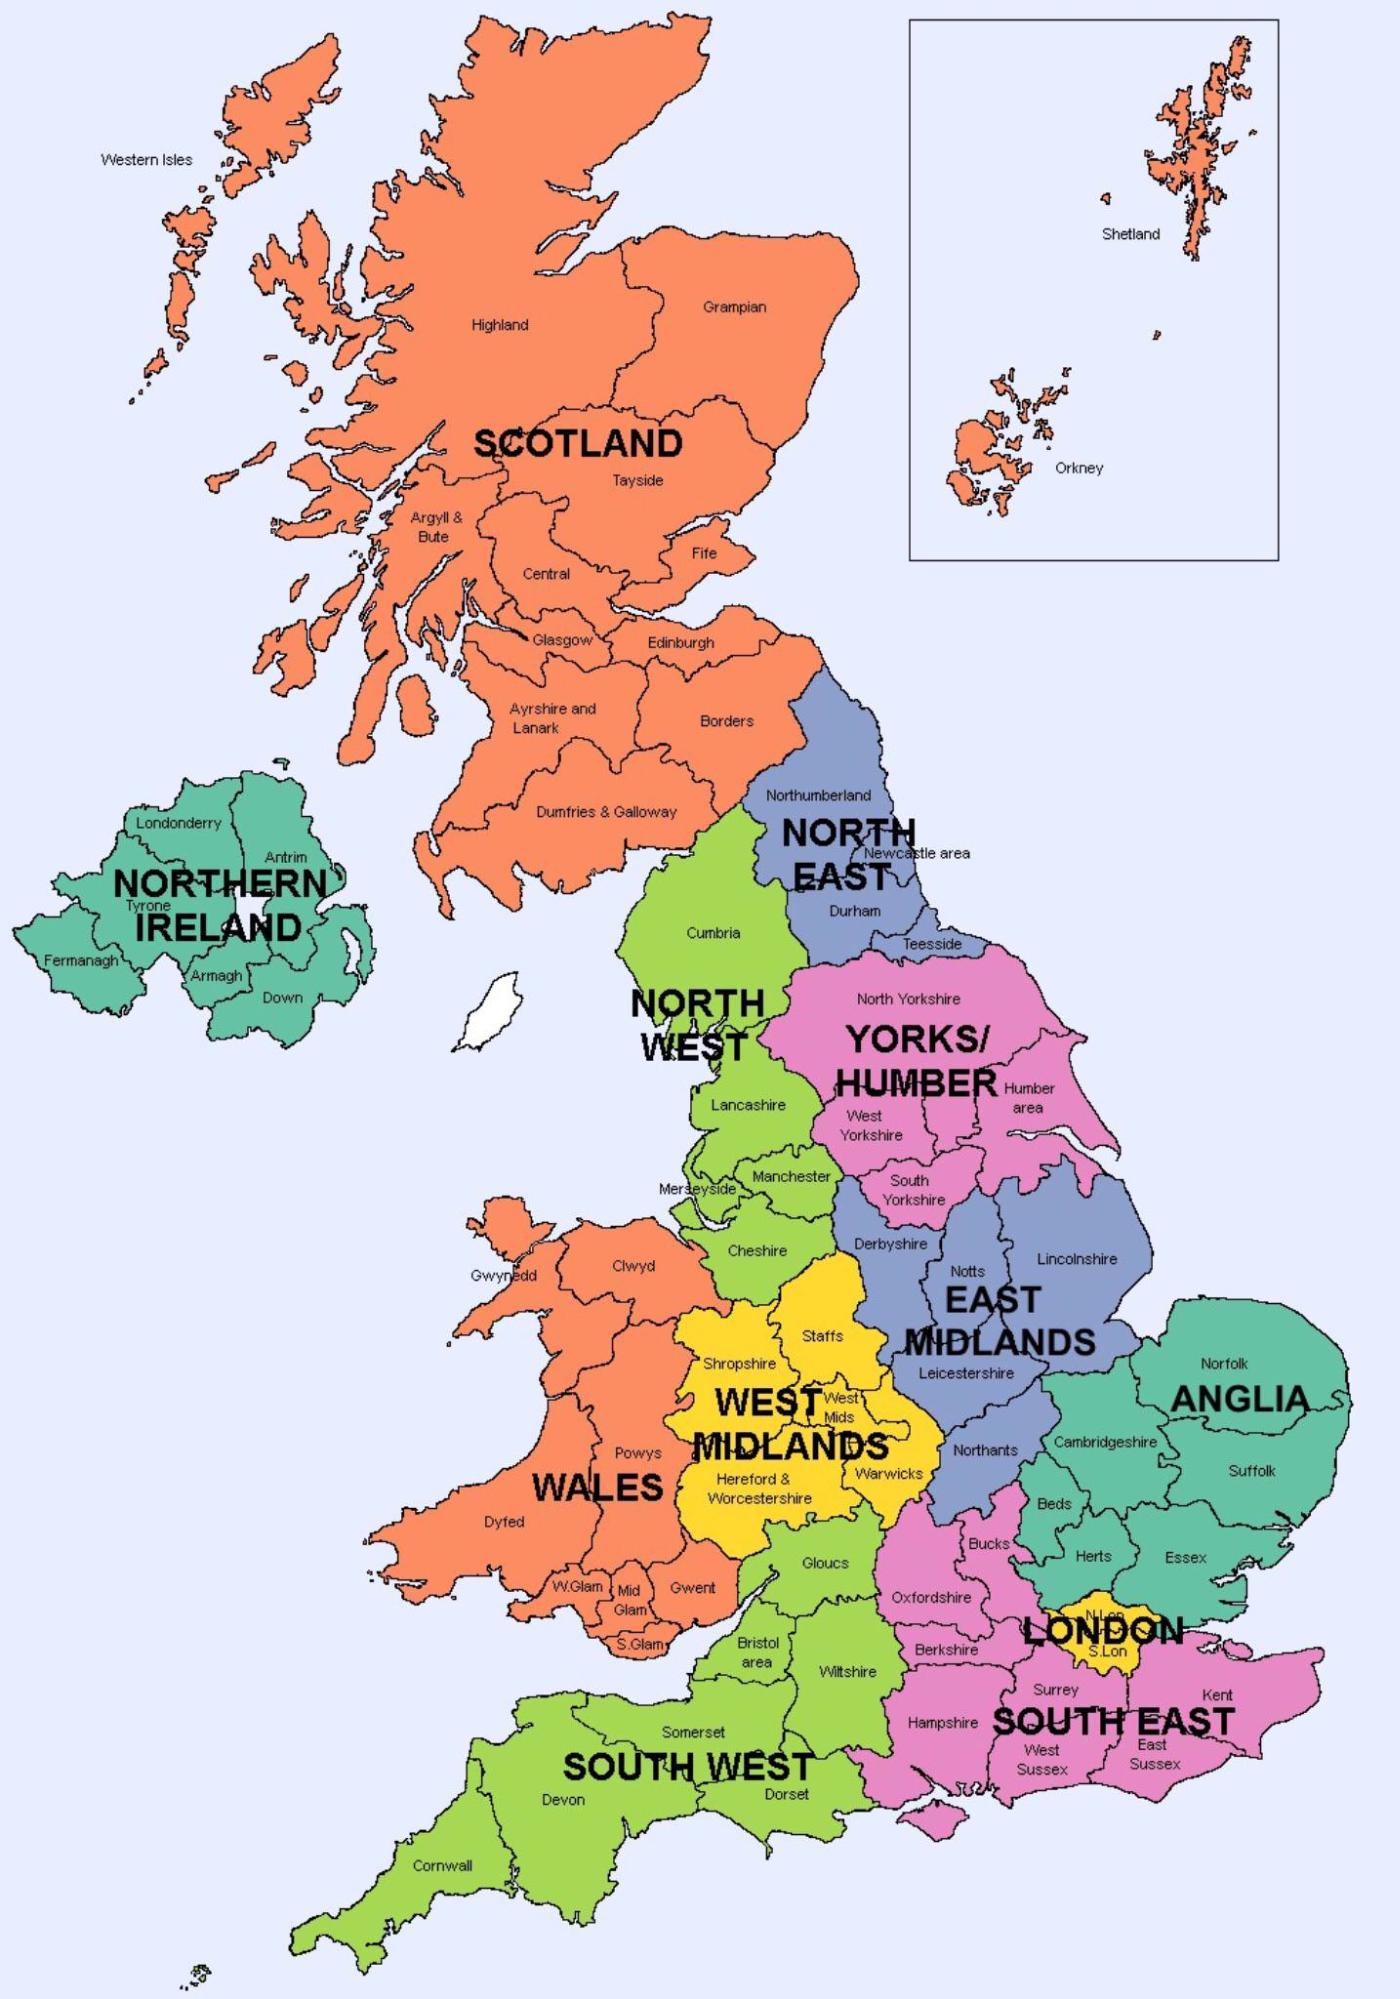 Vương quốc Anh là một trong những quốc gia thành công nhất trên thế giới, với vị trí địa lý quan trọng trên bản đồ thế giới. Với nền kinh tế phát triển, văn hoá đa dạng và một lịch sử phong phú, Anh là một điểm đến hấp dẫn cho du khách từ khắp nơi trên thế giới. Hãy khám phá đất nước này và trải nghiệm nét độc đáo của vương quốc Anh.